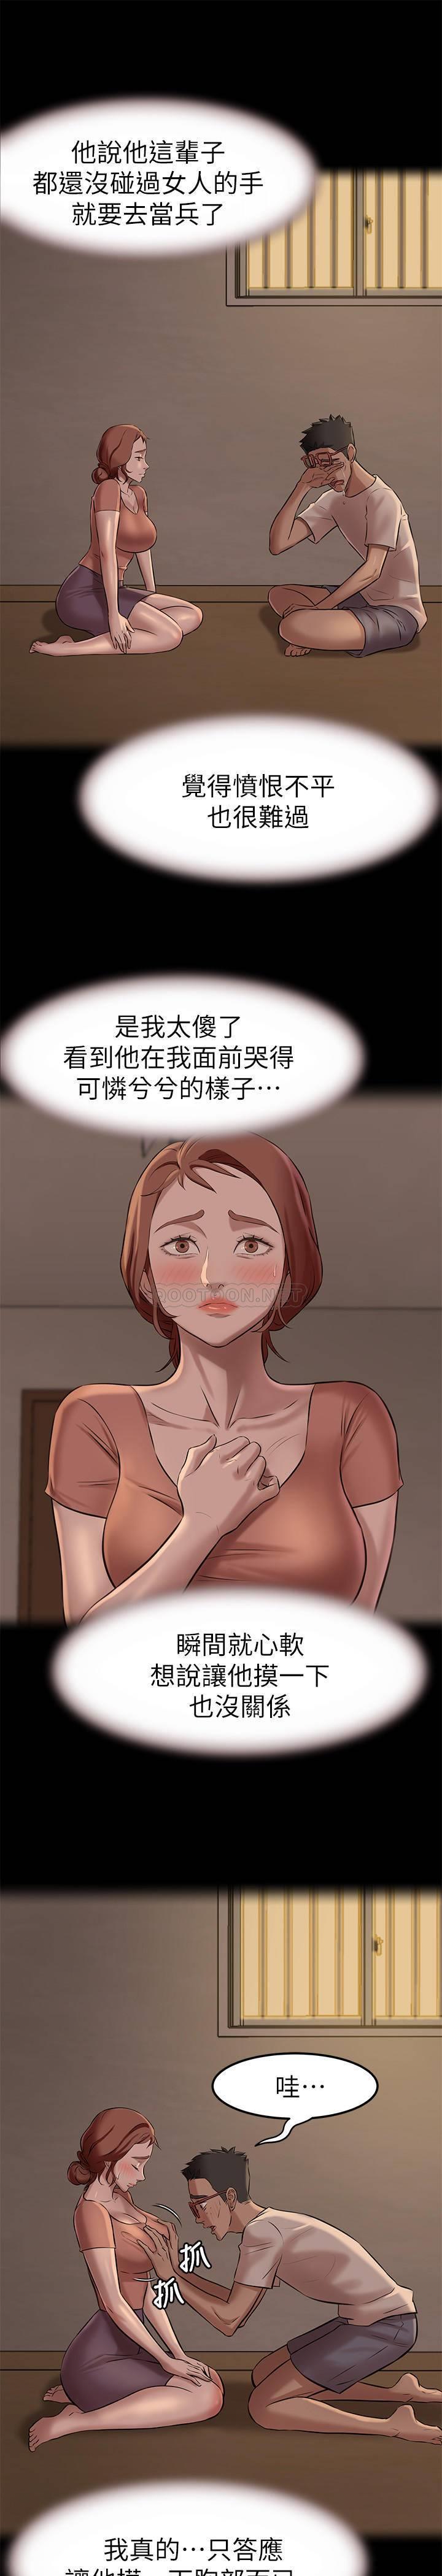 韩国污漫画 小褲褲筆記 第4话 - mō两下没关系吧? 13